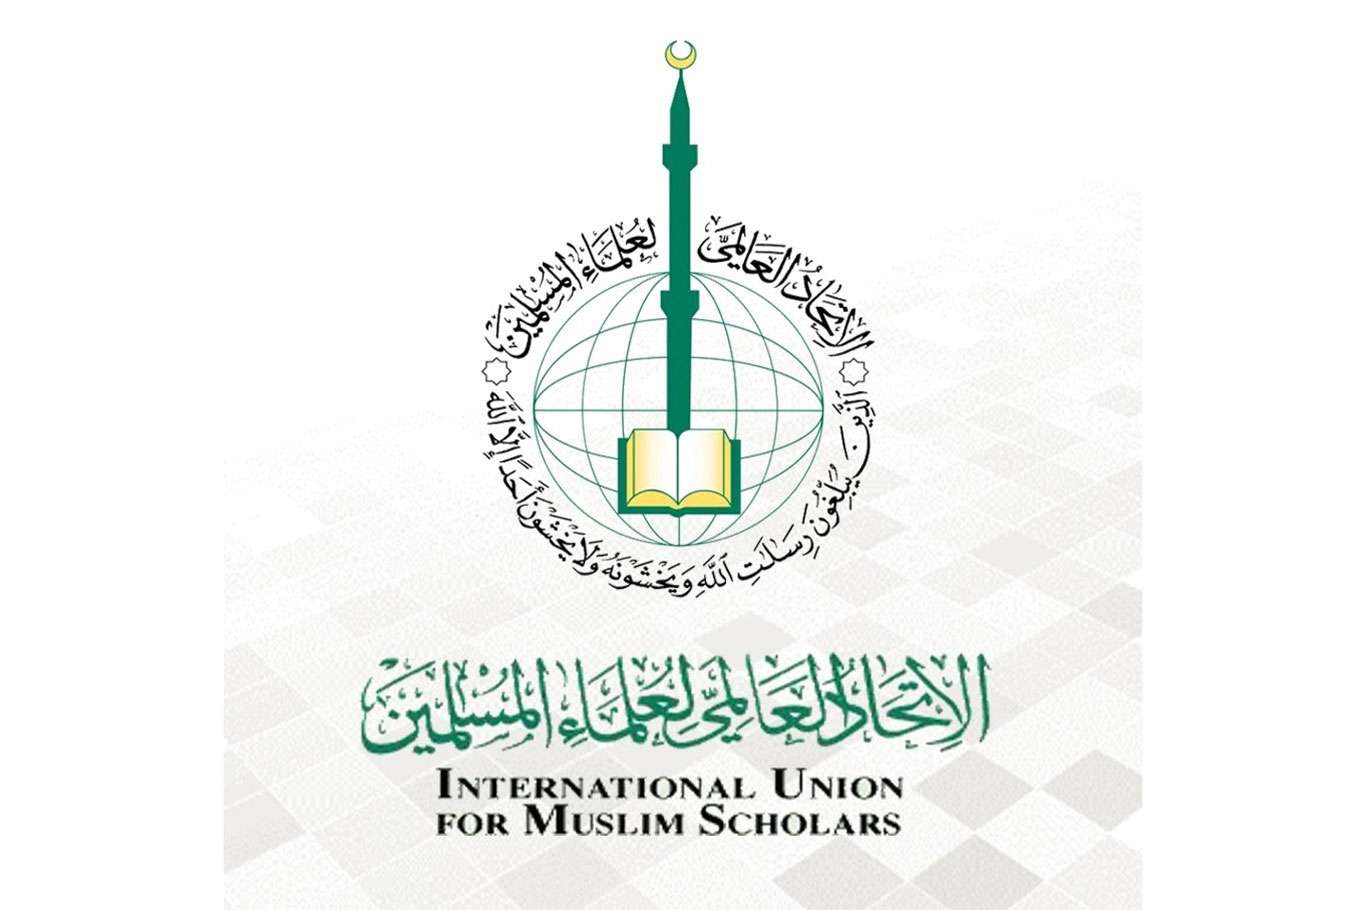 الاتحاد العالمي لعلماء المسلمين يطالب الدول الإسلامية باتخاذ إجراءات عملية ضد كل دولة تسيئ إلى المقدسات الإسلامية